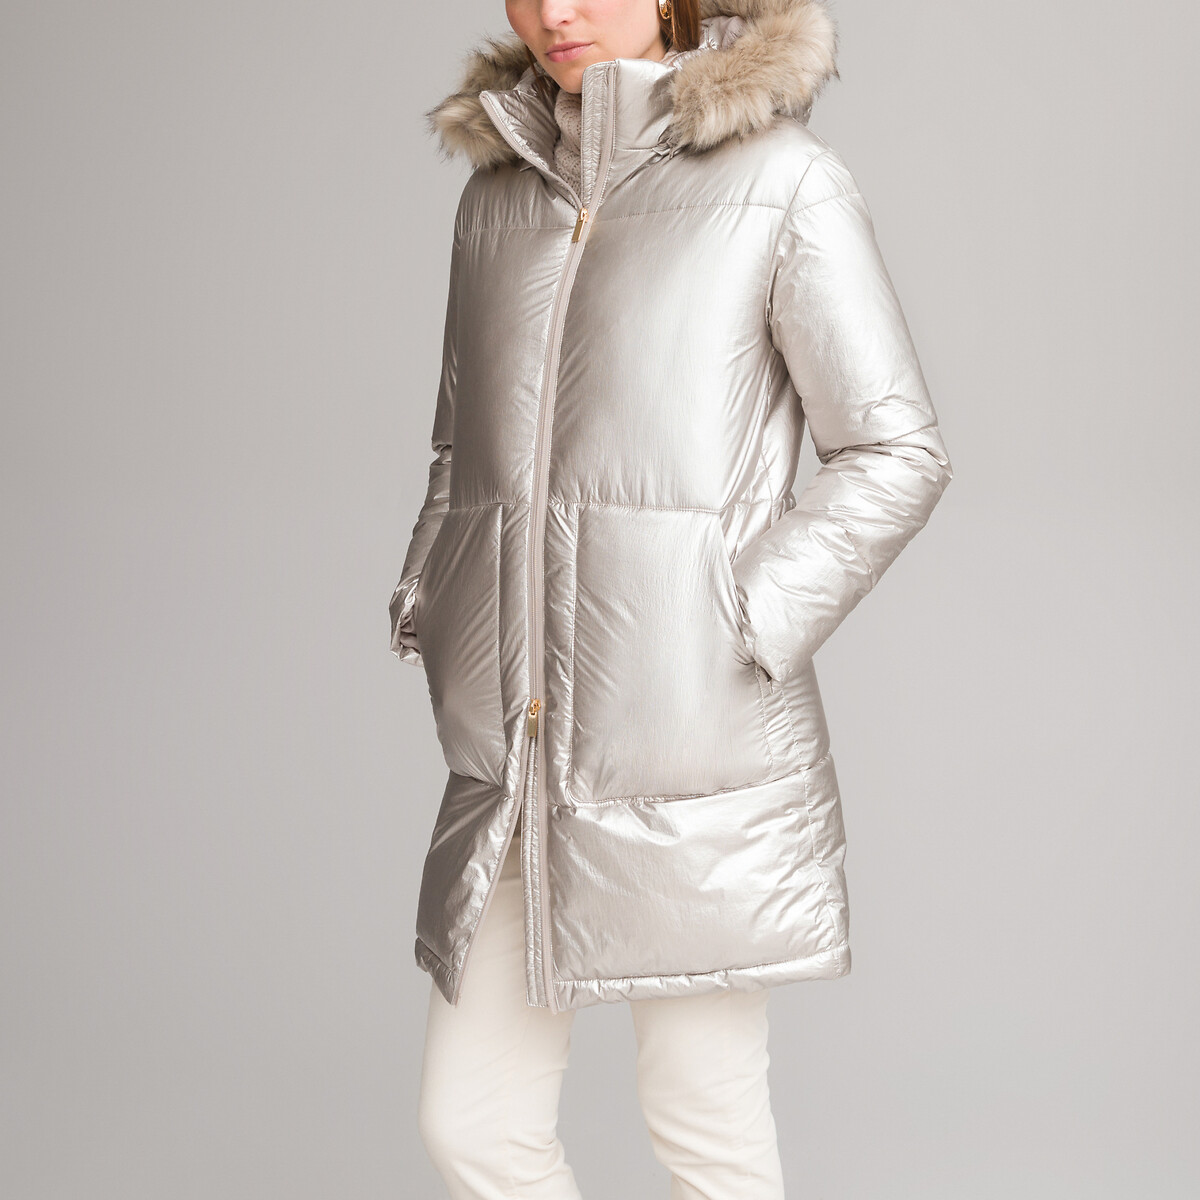 Куртка стеганая зимняя средней длины съемный капюшон 54 (FR) - 60 (RUS) серый